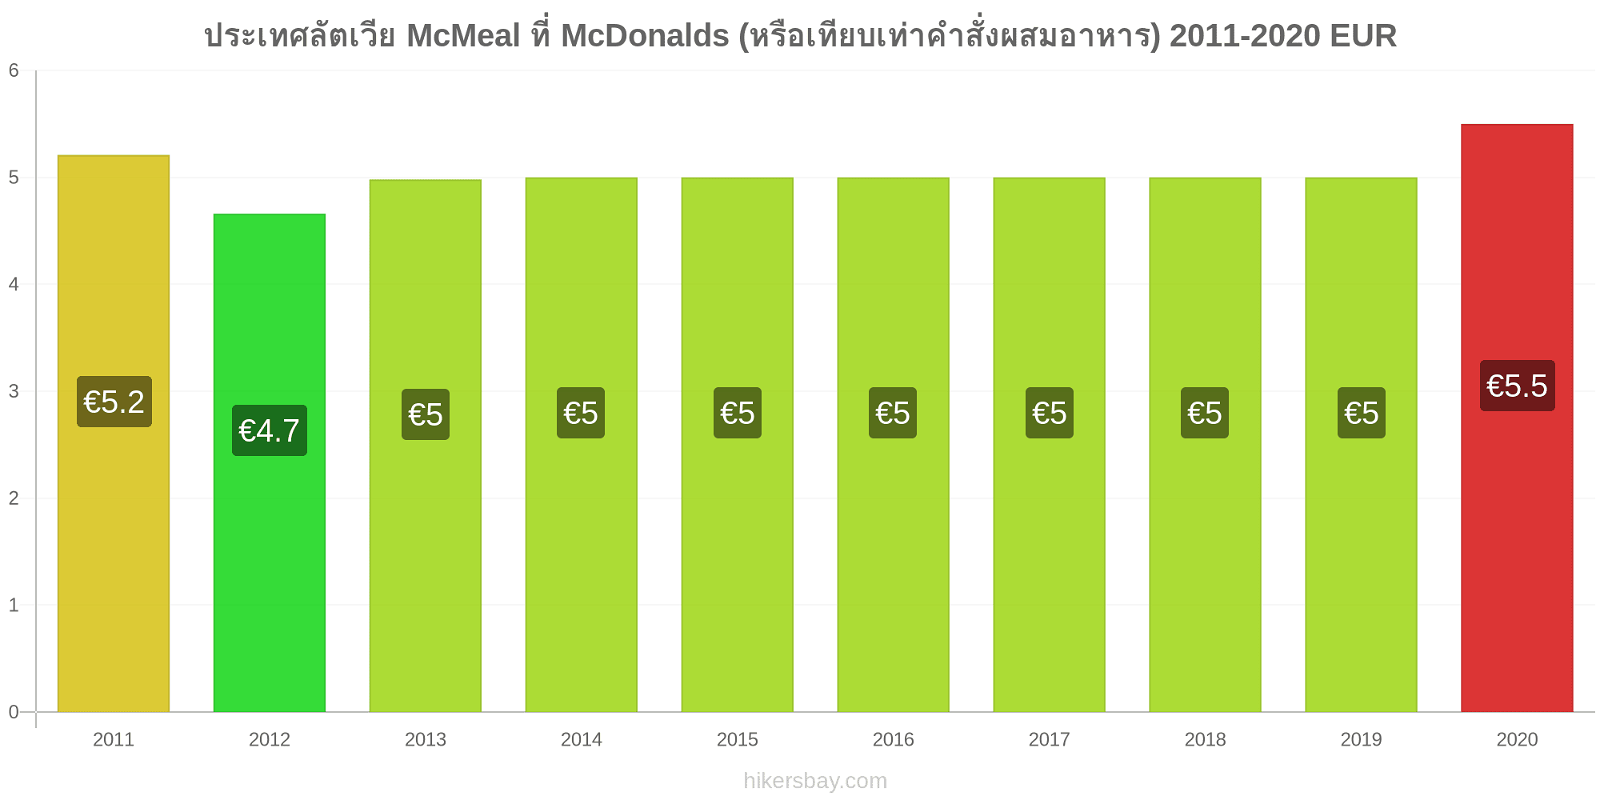 ประเทศลัตเวีย การเปลี่ยนแปลงราคา McMeal ที่ McDonalds (หรือเทียบเท่าคำสั่งผสมอาหาร) hikersbay.com